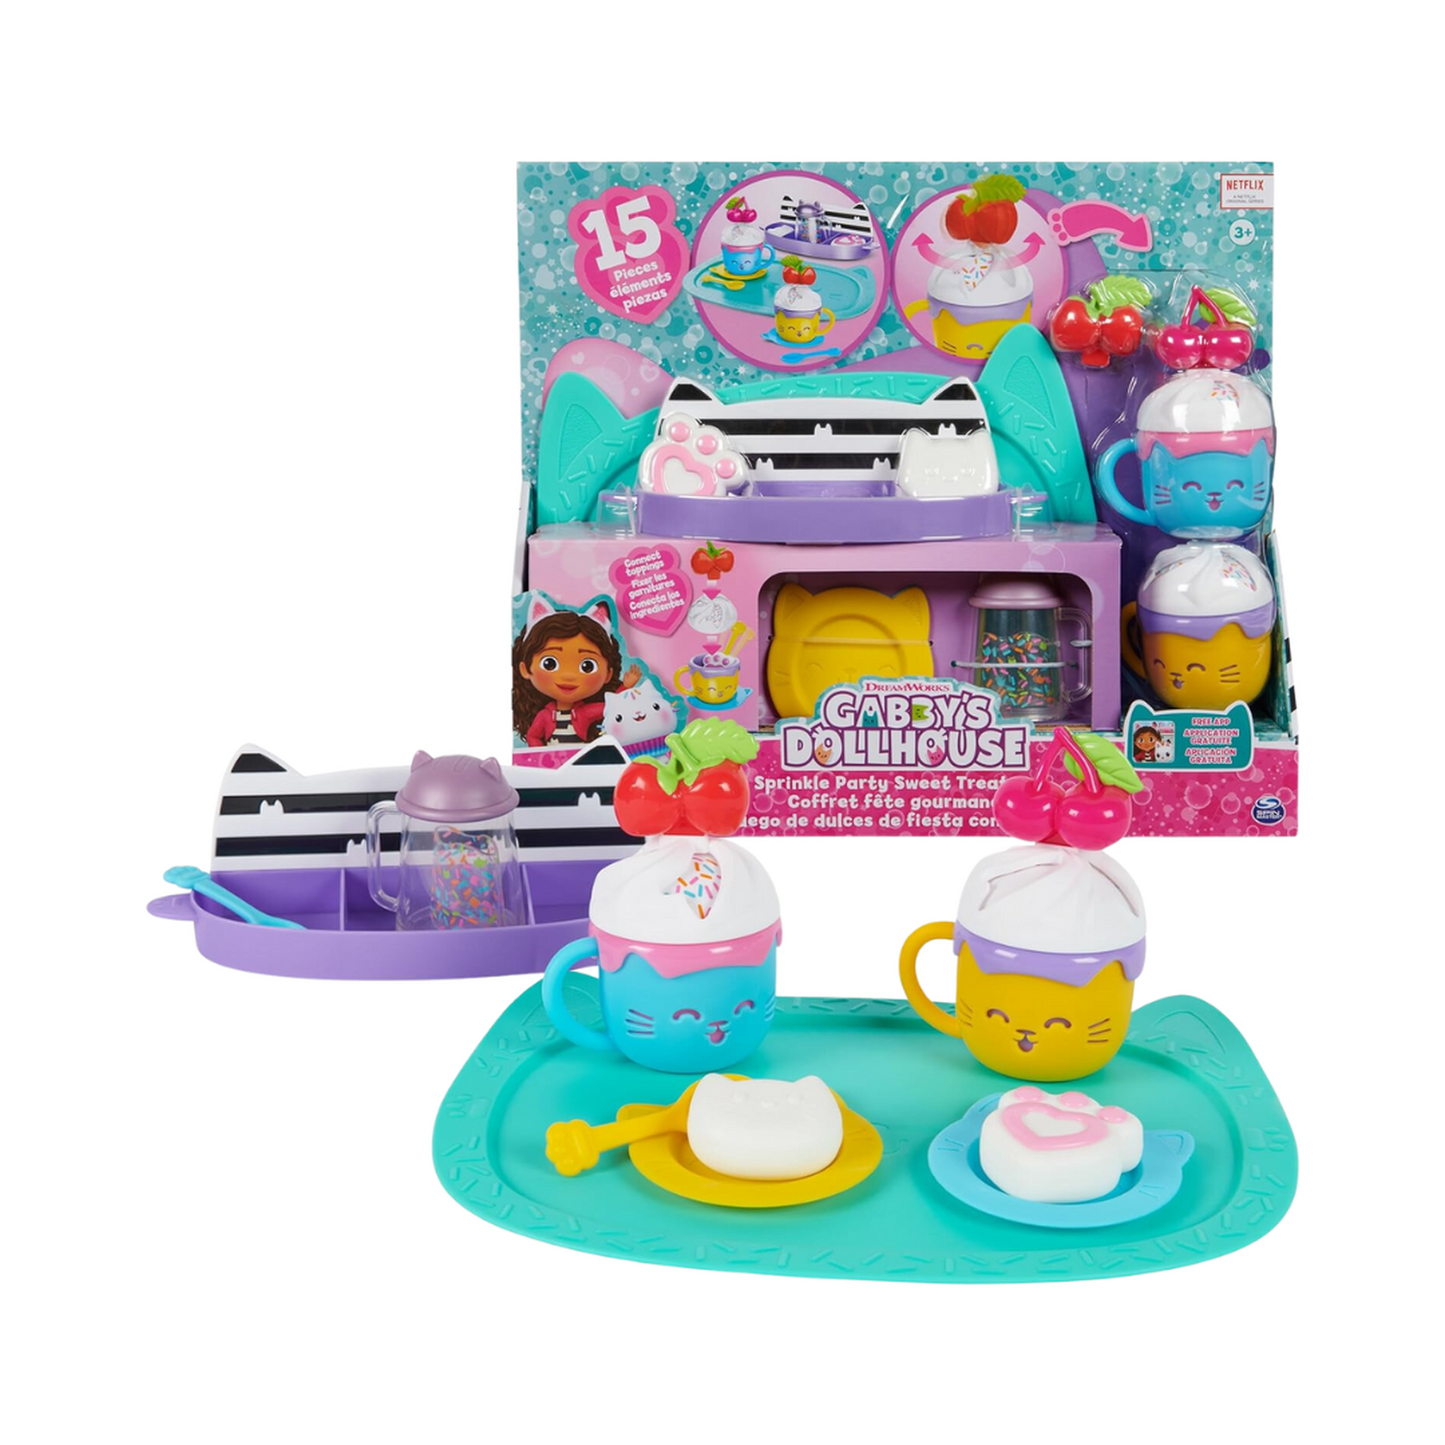 La casa de muñecas de Gabby juego de dulces de fiesta con confety